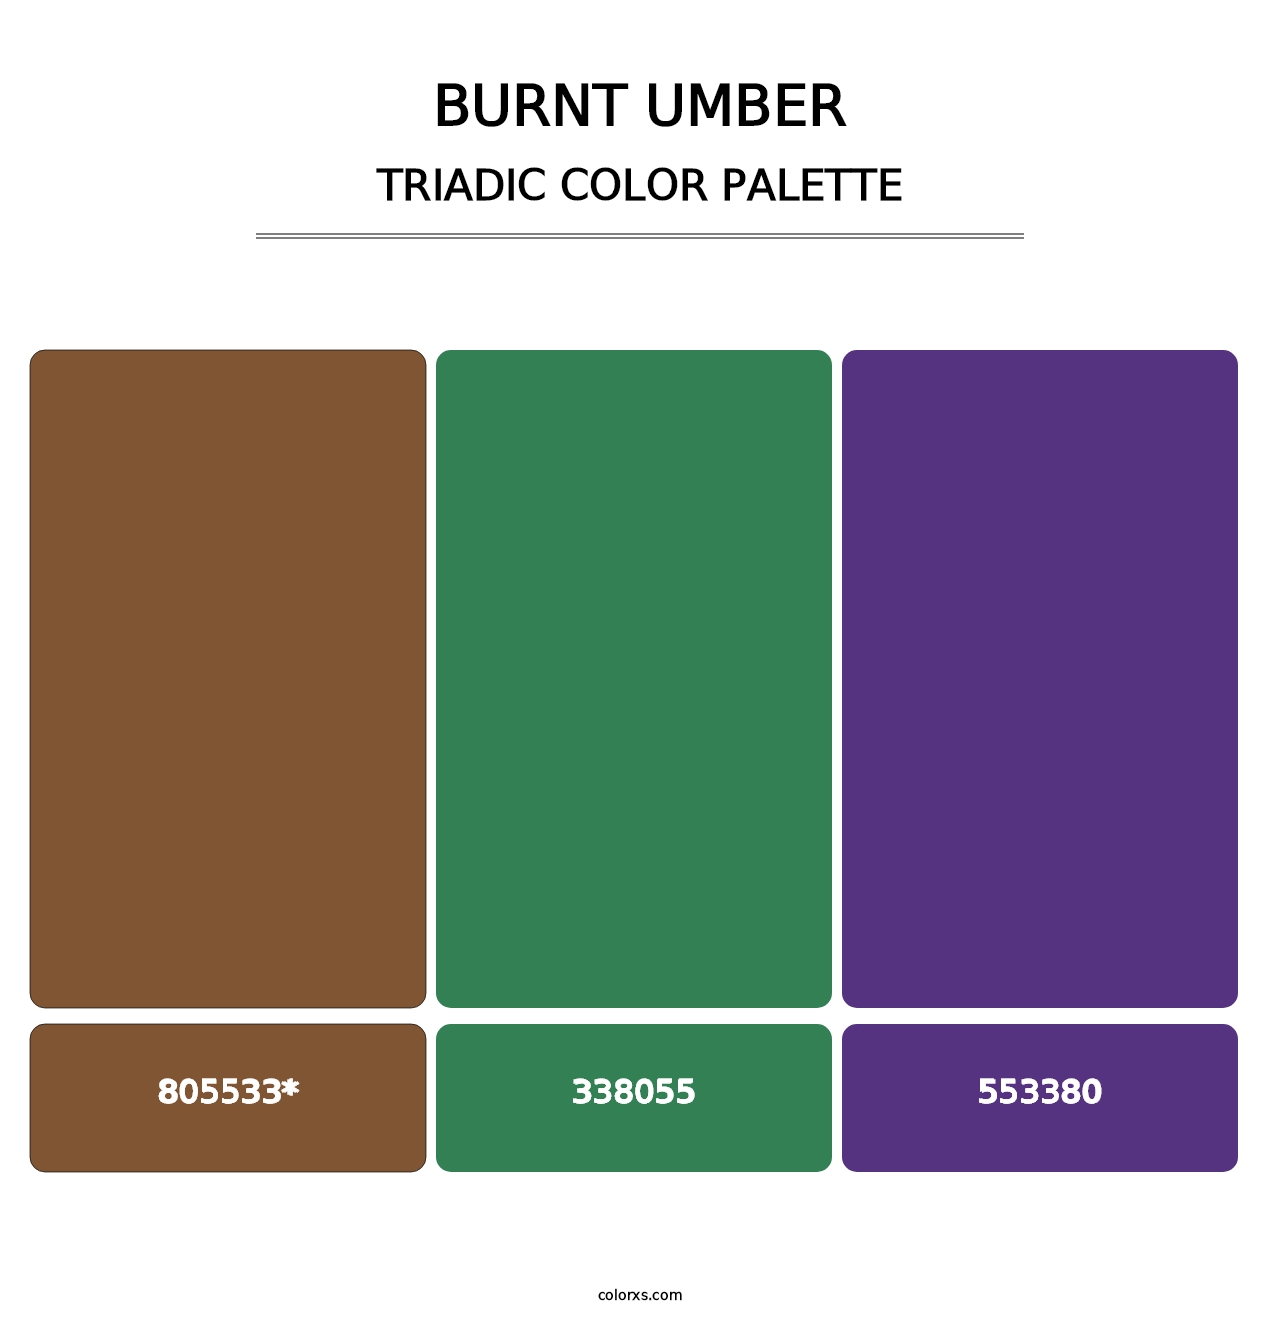 Burnt Umber - Triadic Color Palette